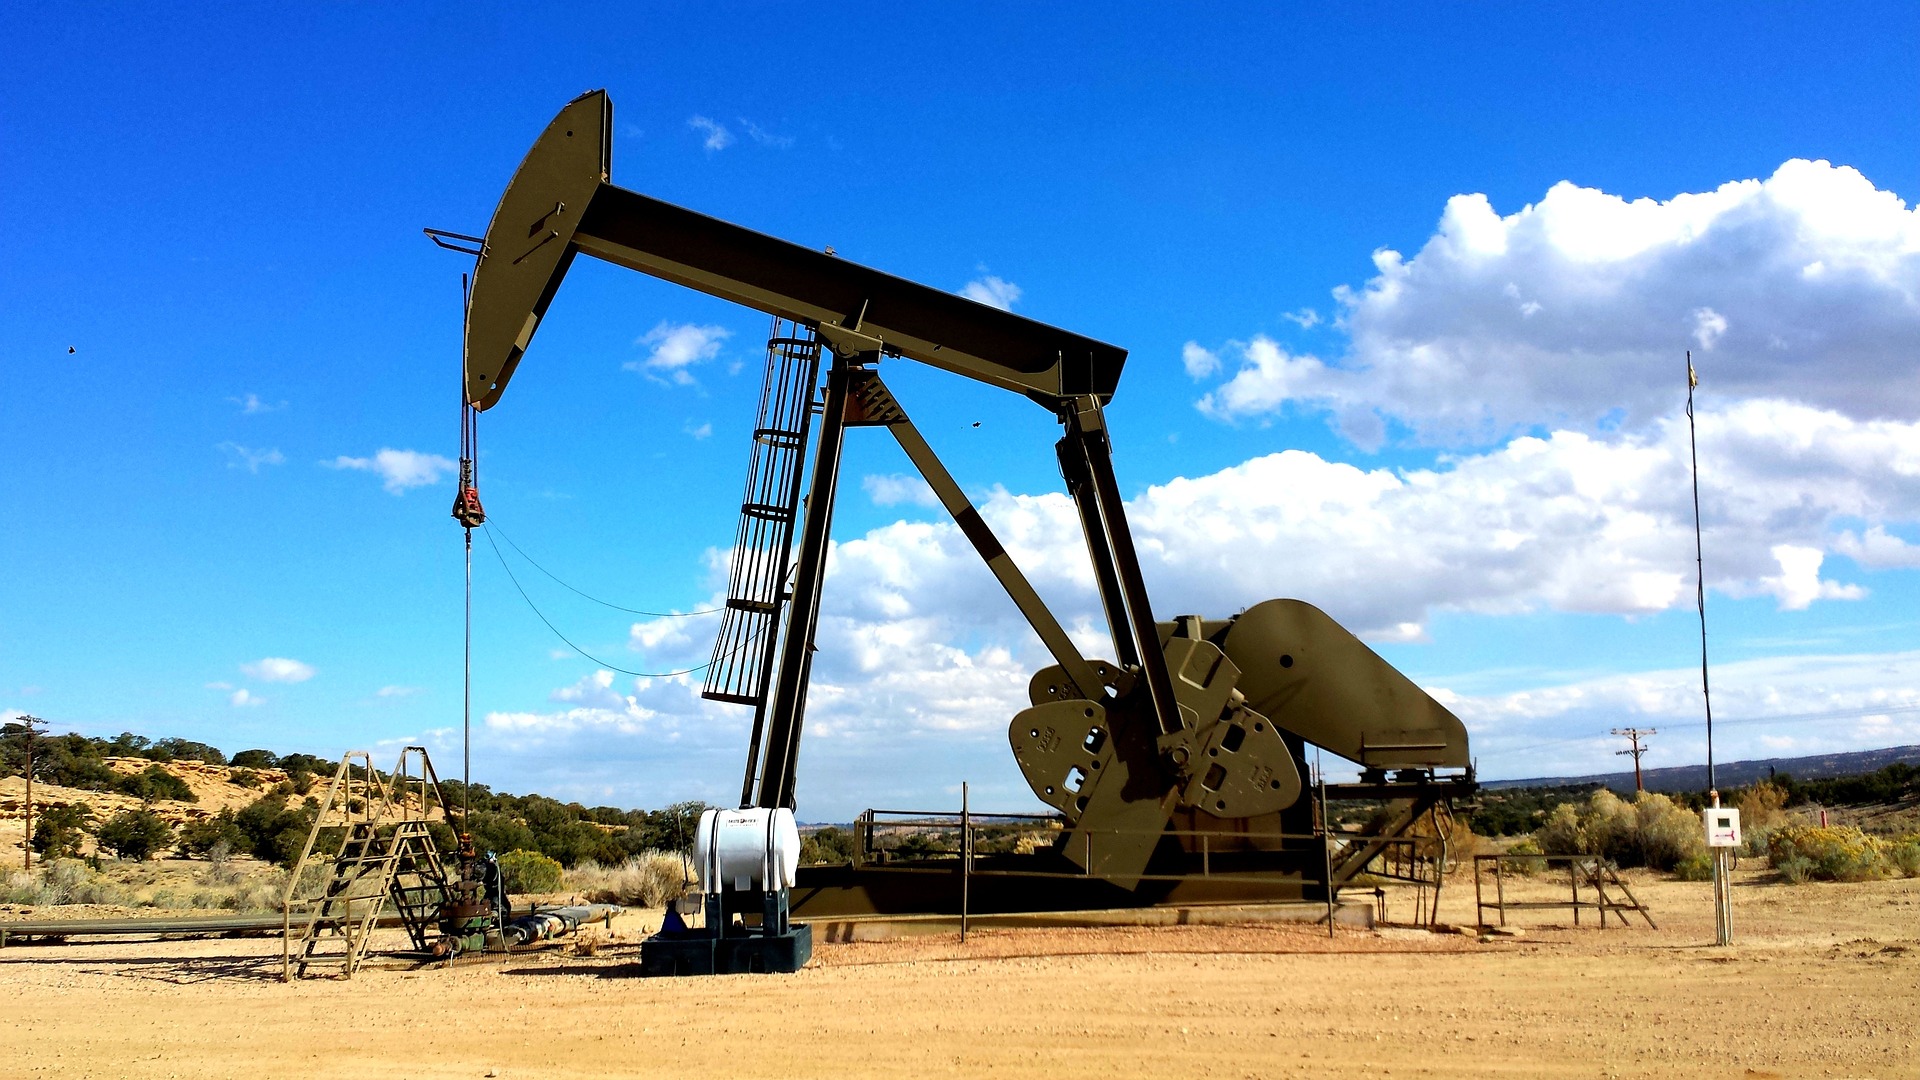 An oil pump standing in a flat desert